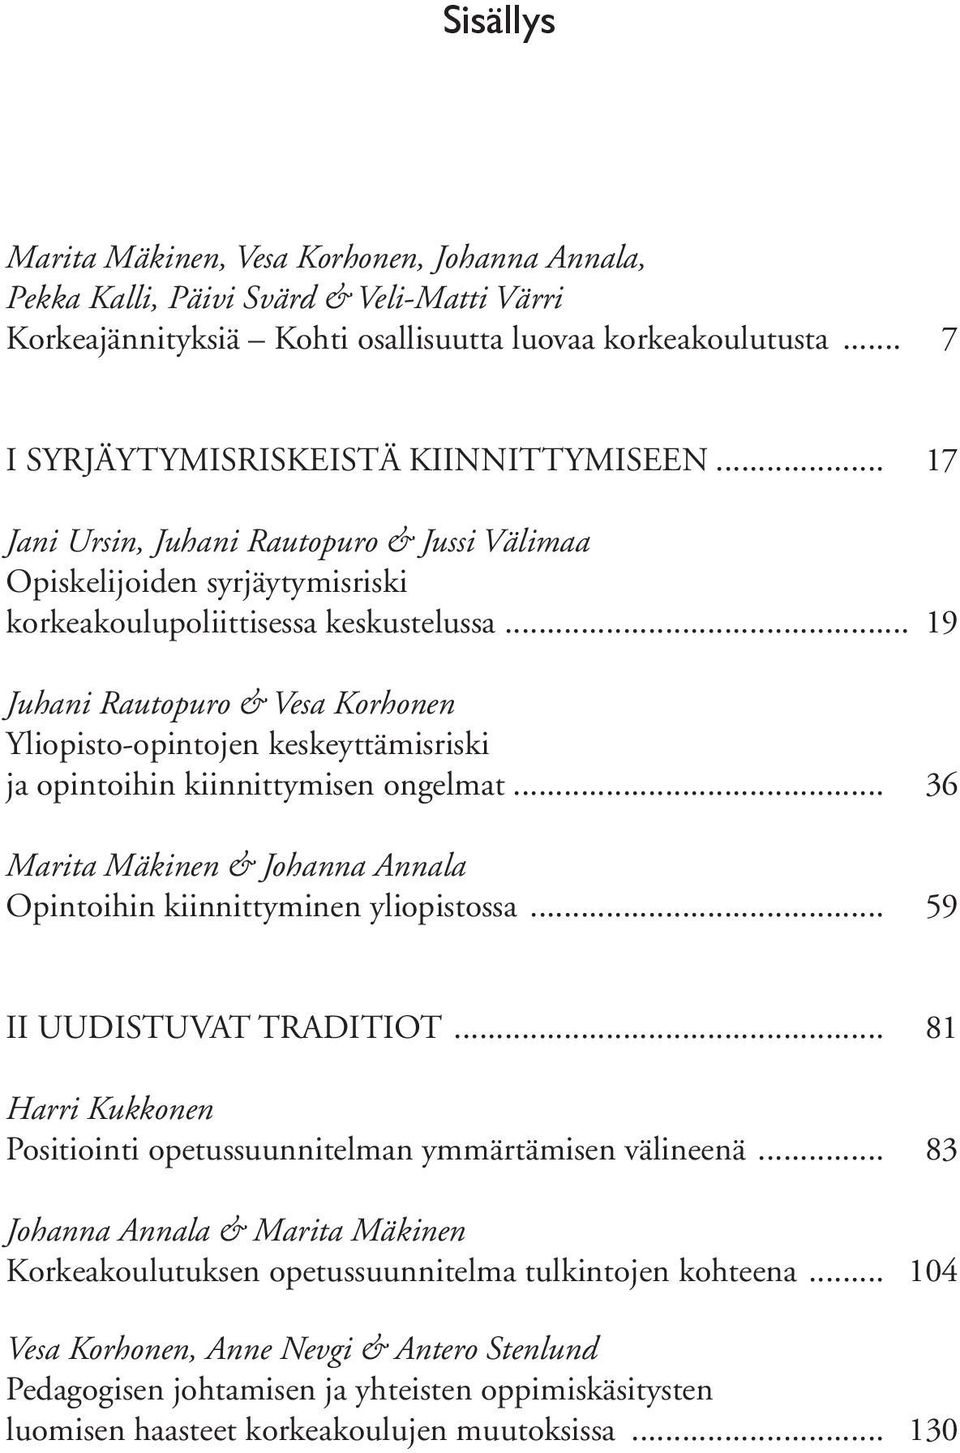 .. 19 Juhani Rautopuro & Vesa Korhonen Yliopisto-opintojen keskeyttämisriski ja opintoihin kiinnittymisen ongelmat... 36 Marita Mäkinen & Johanna Annala Opintoihin kiinnittyminen yliopistossa.